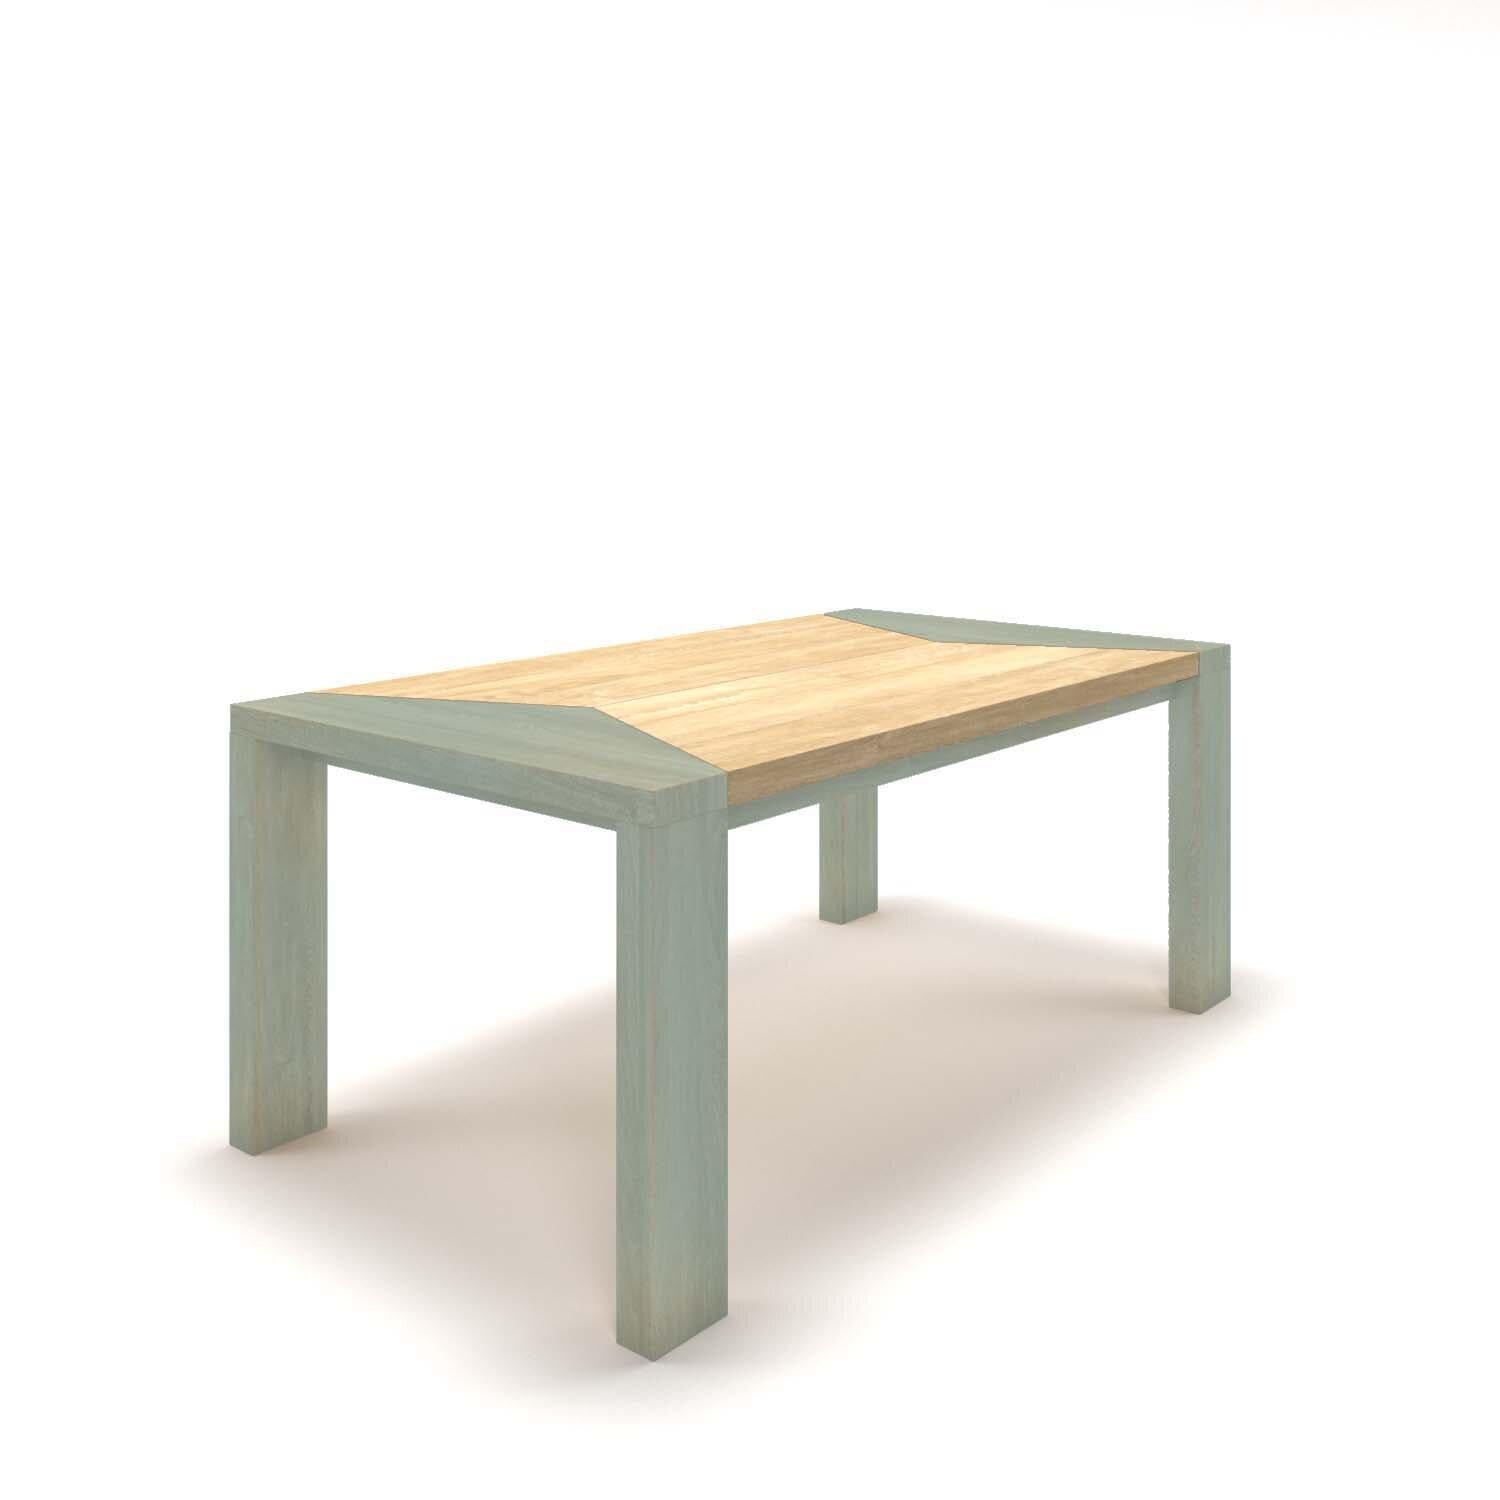 Découvrez la beauté unique de Trigono, une table basse impressionnante fabriquée en chêne massif et conçue pour être la pièce maîtresse de votre salon. 

Toutes les pièces de Tektōn sont fabriquées en bois massif naturel. De petites variations